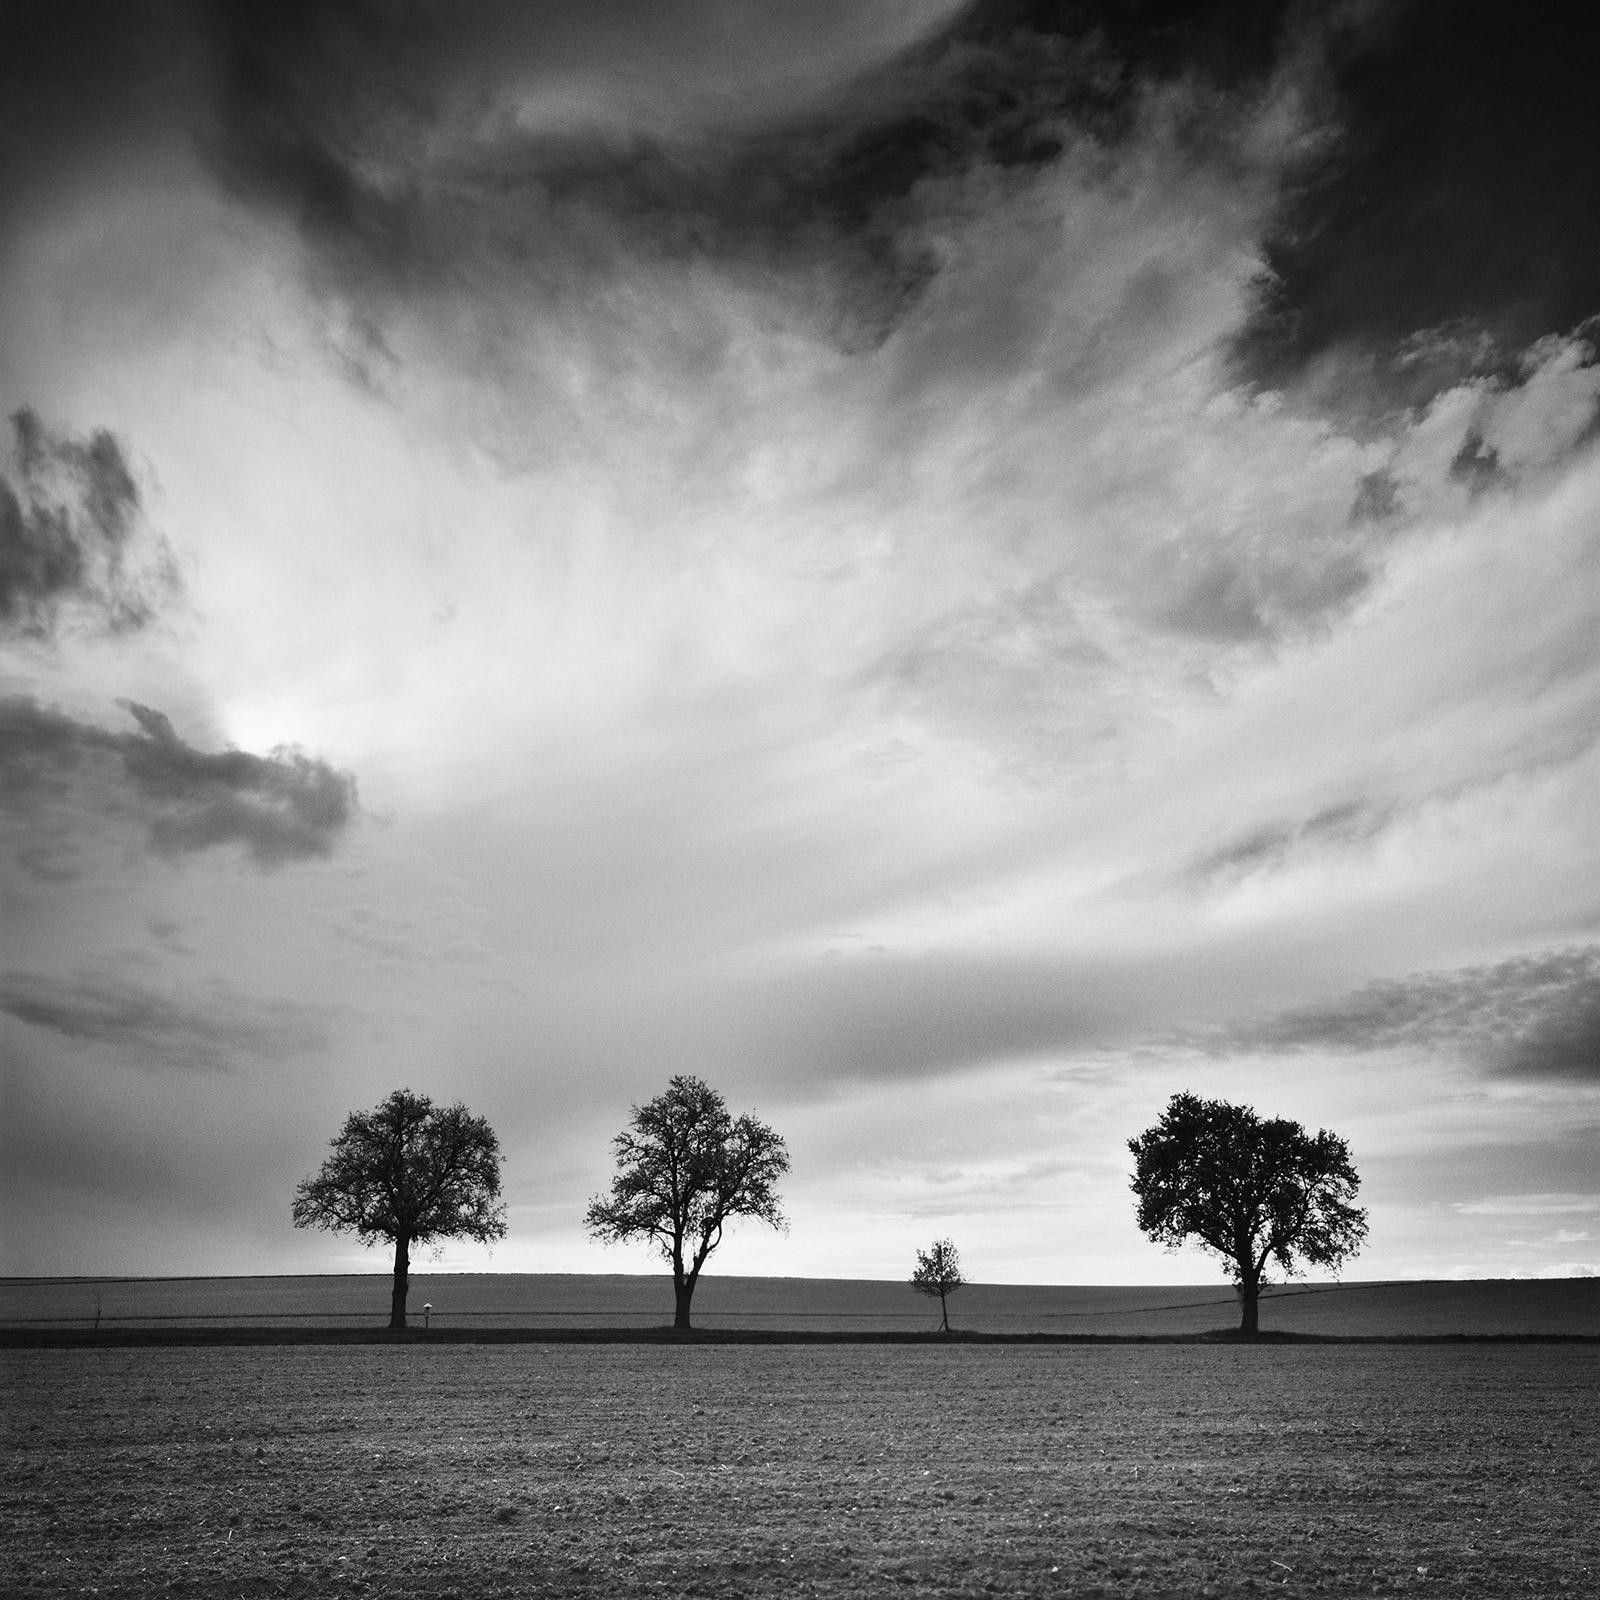 Tres árboles y medio, muy nublado, tormenta, fotografía de paisaje en blanco y negro